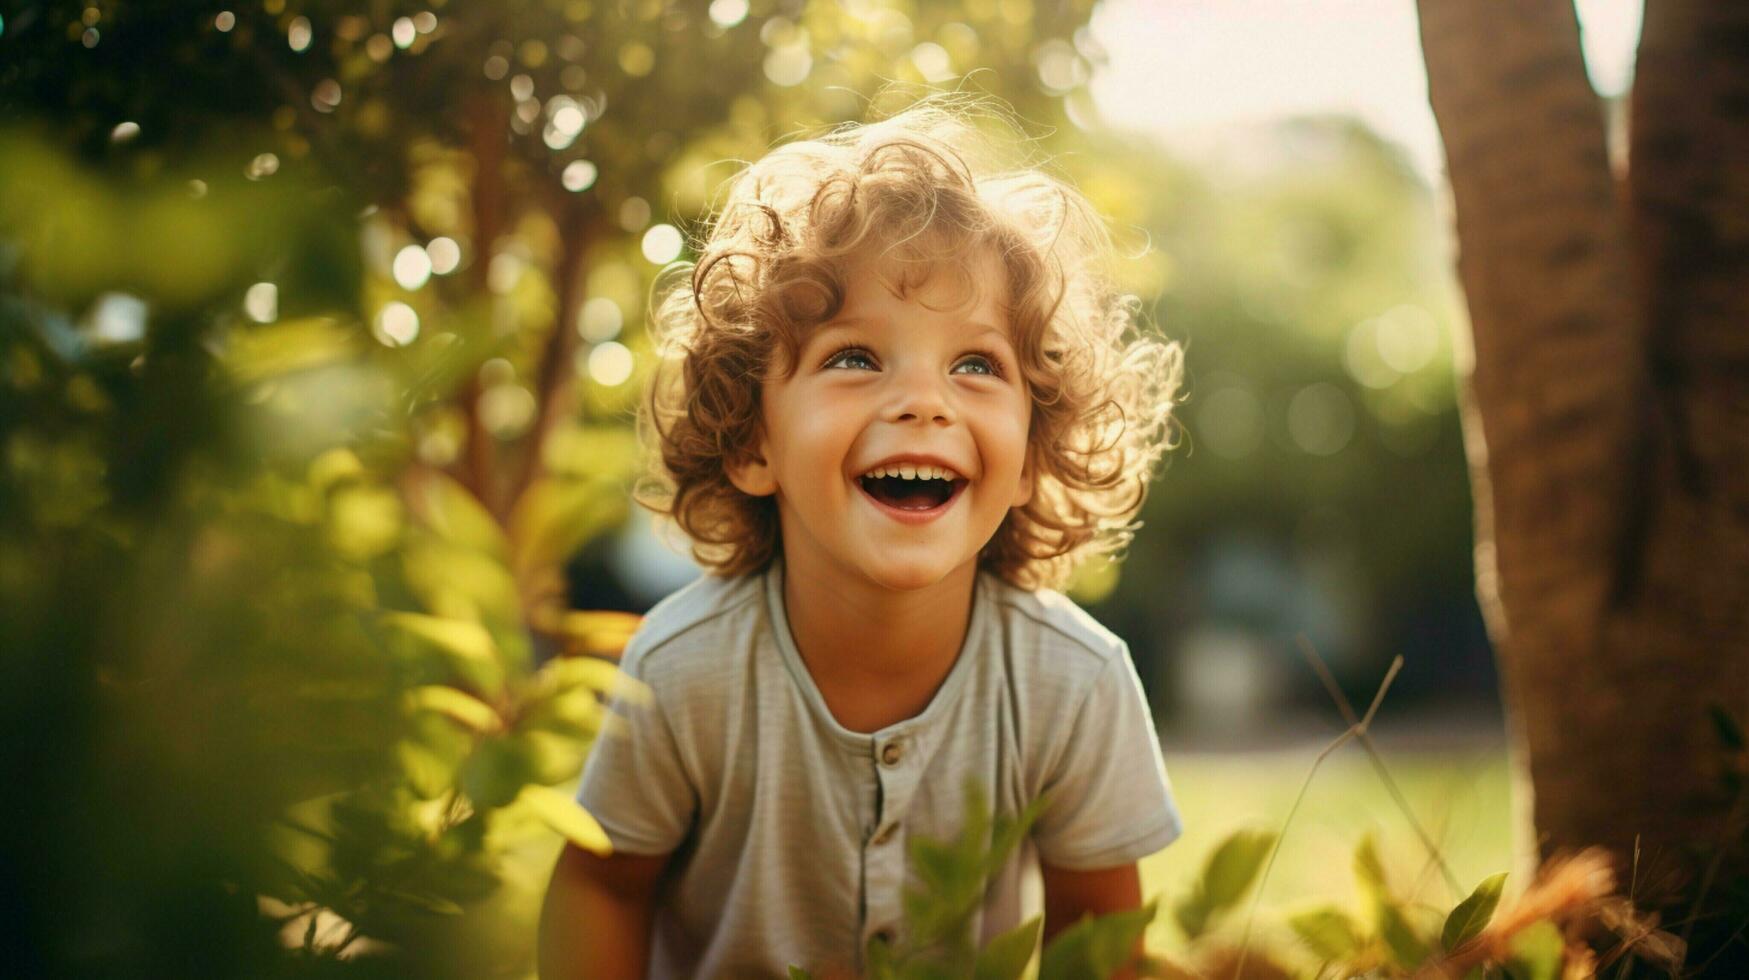 sonriente niño jugando al aire libre alegre y linda mirando foto